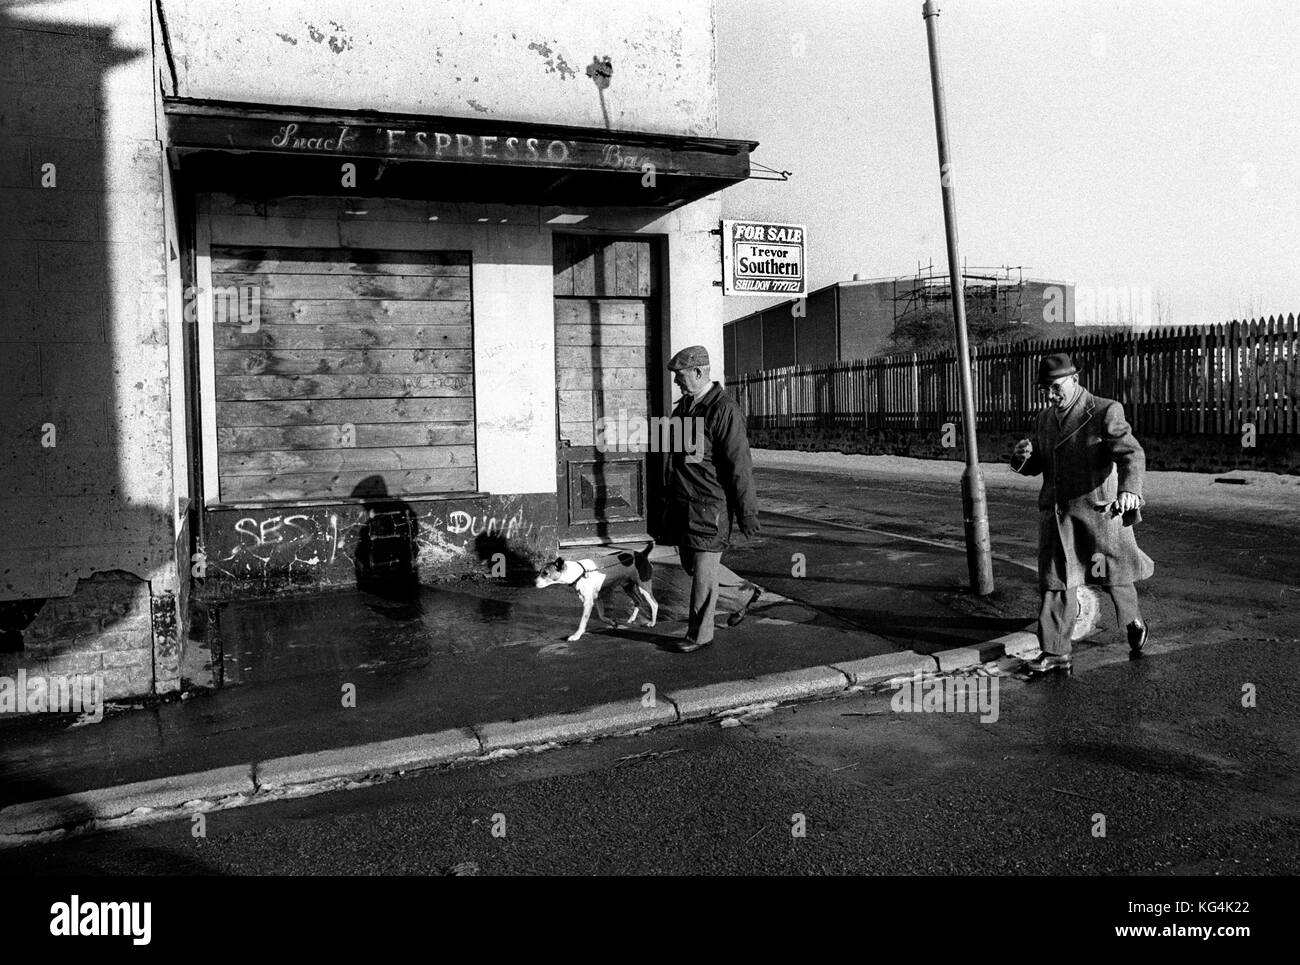 Shildon in der Grafschaft Durham 1986 s. Einmal eine Stadt bekannt als "Wiege der Eisenbahnen". 1984 railworks collaped und Links ist eine Gemeinschaft von Arbeitslosigkeit und wirtschaftlicher Niedergang für das nächste Jahrzehnt. Stockfoto